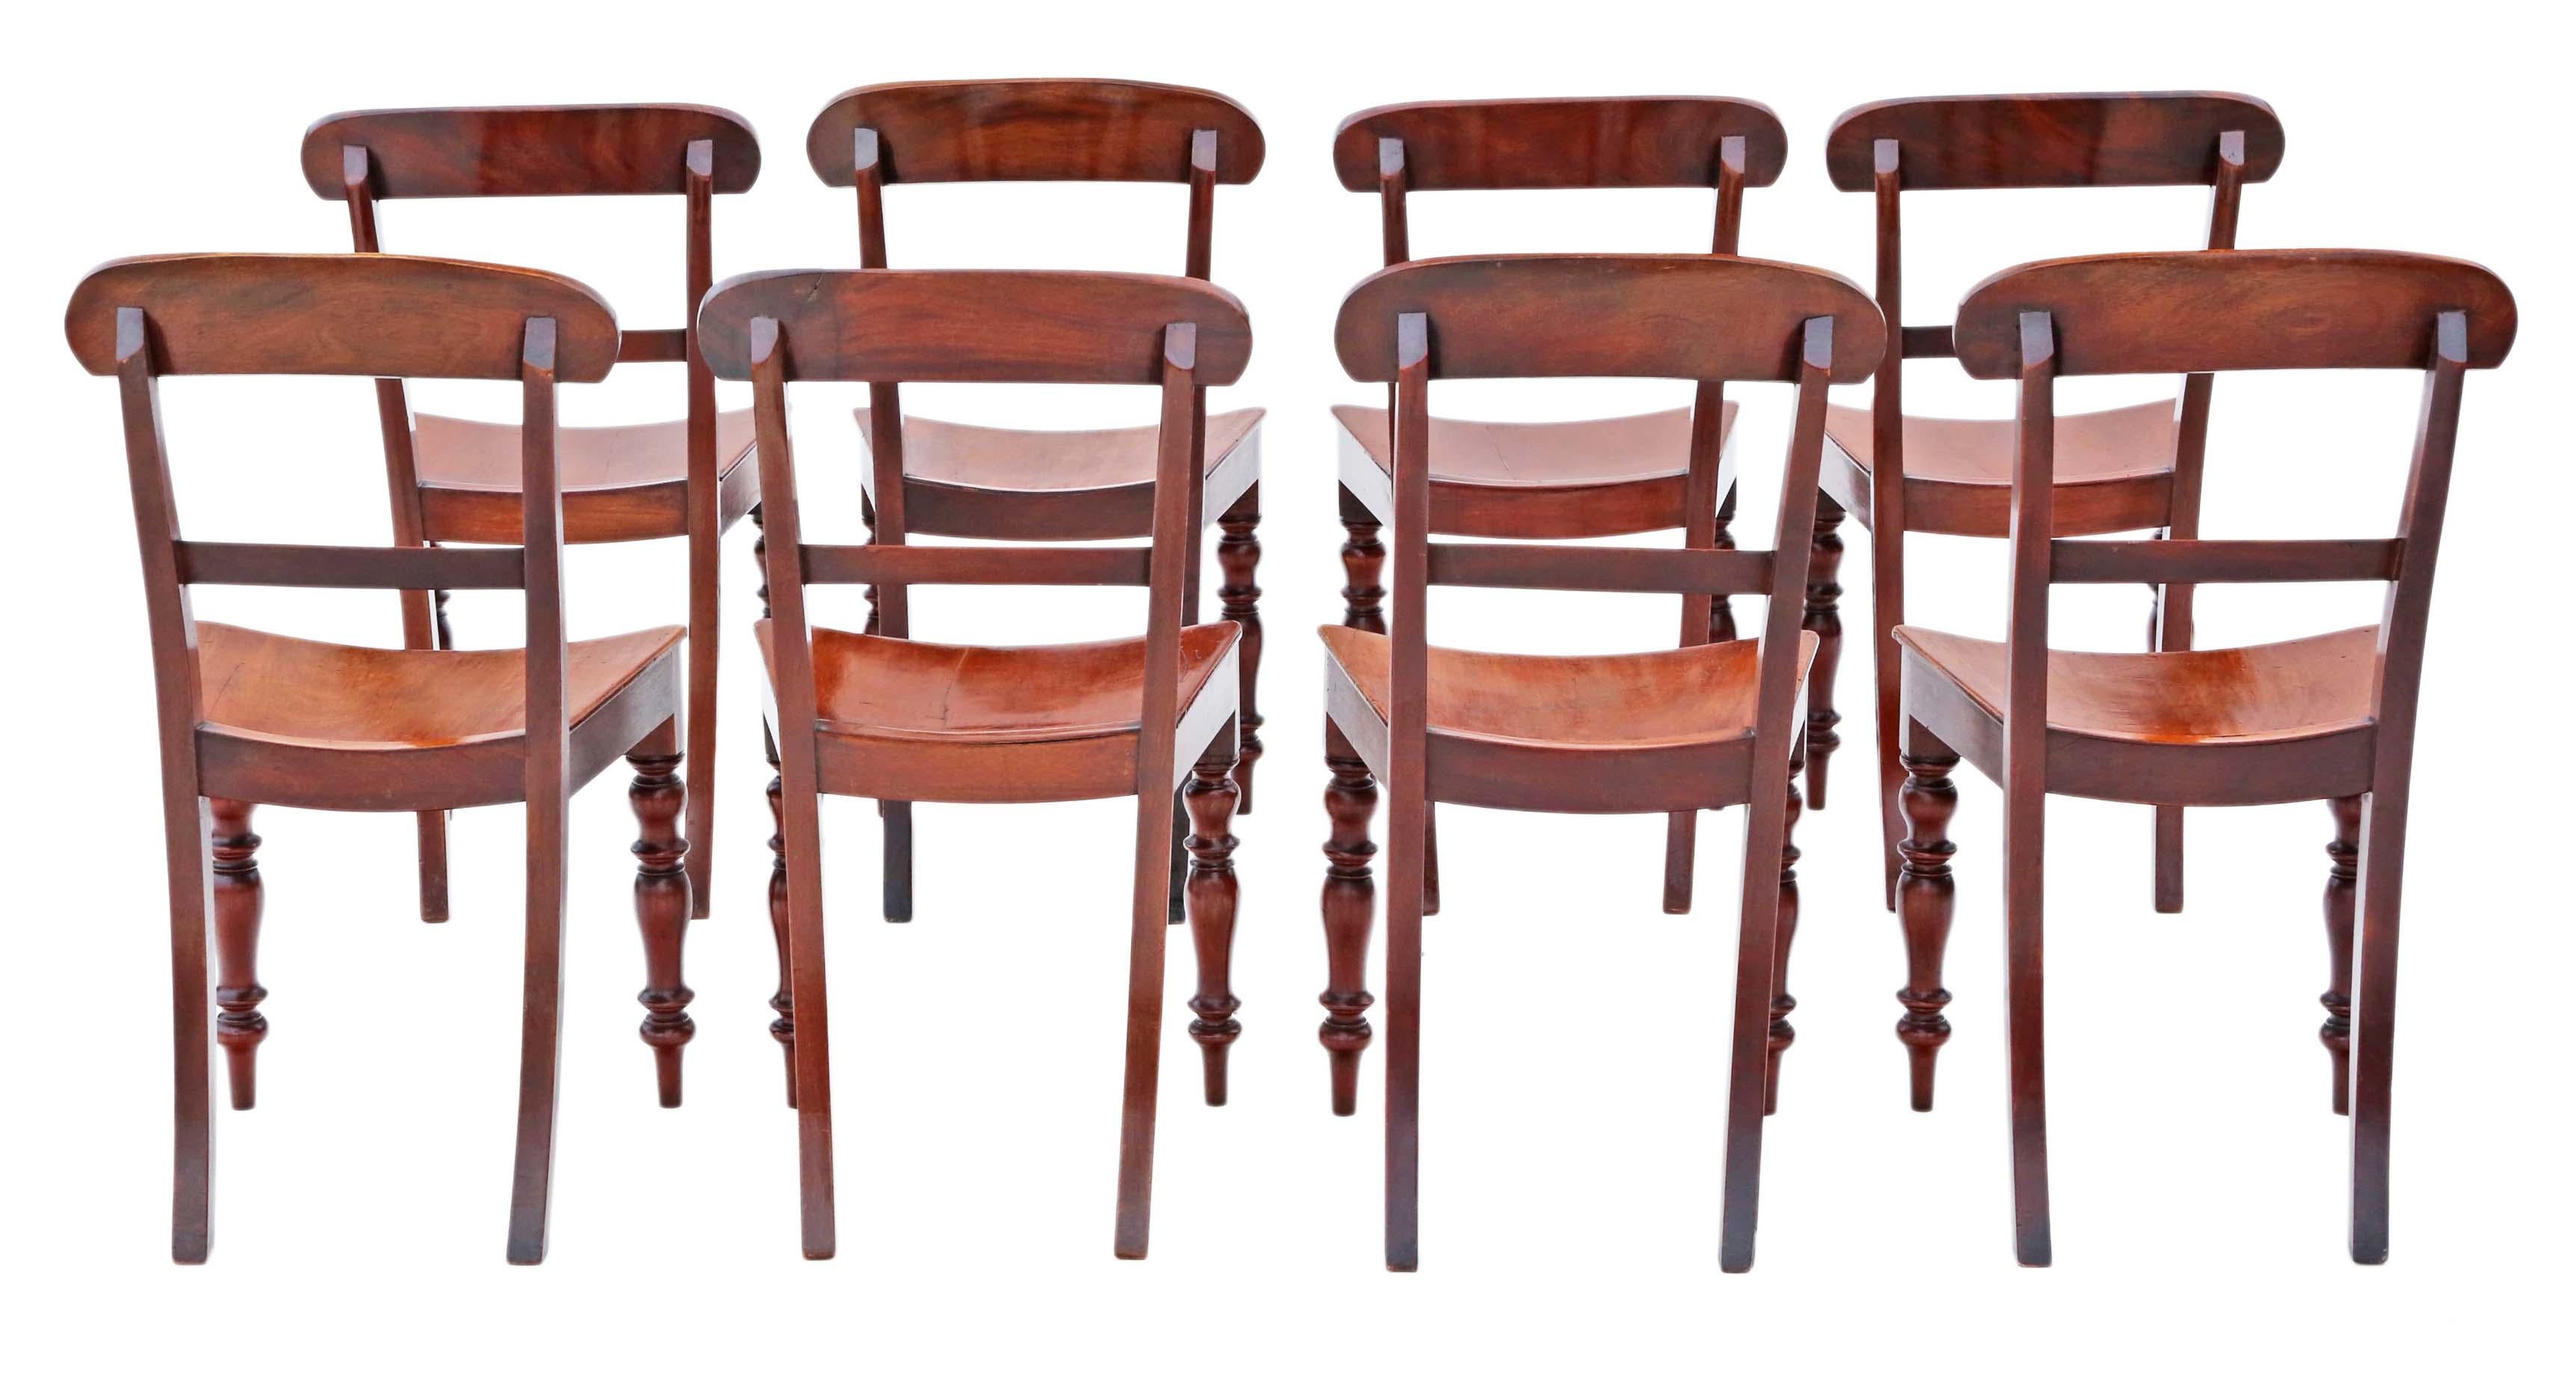 Entdecken Sie einen atemberaubenden Satz von 8 Mahagoni-Küchen- oder Esszimmerstühlen aus dem 19. Jahrhundert, um 1860. Diese hochwertige antike Collection'S zeichnet sich durch außergewöhnliche Handwerkskunst und zeitlose Eleganz aus.

Diese Stühle